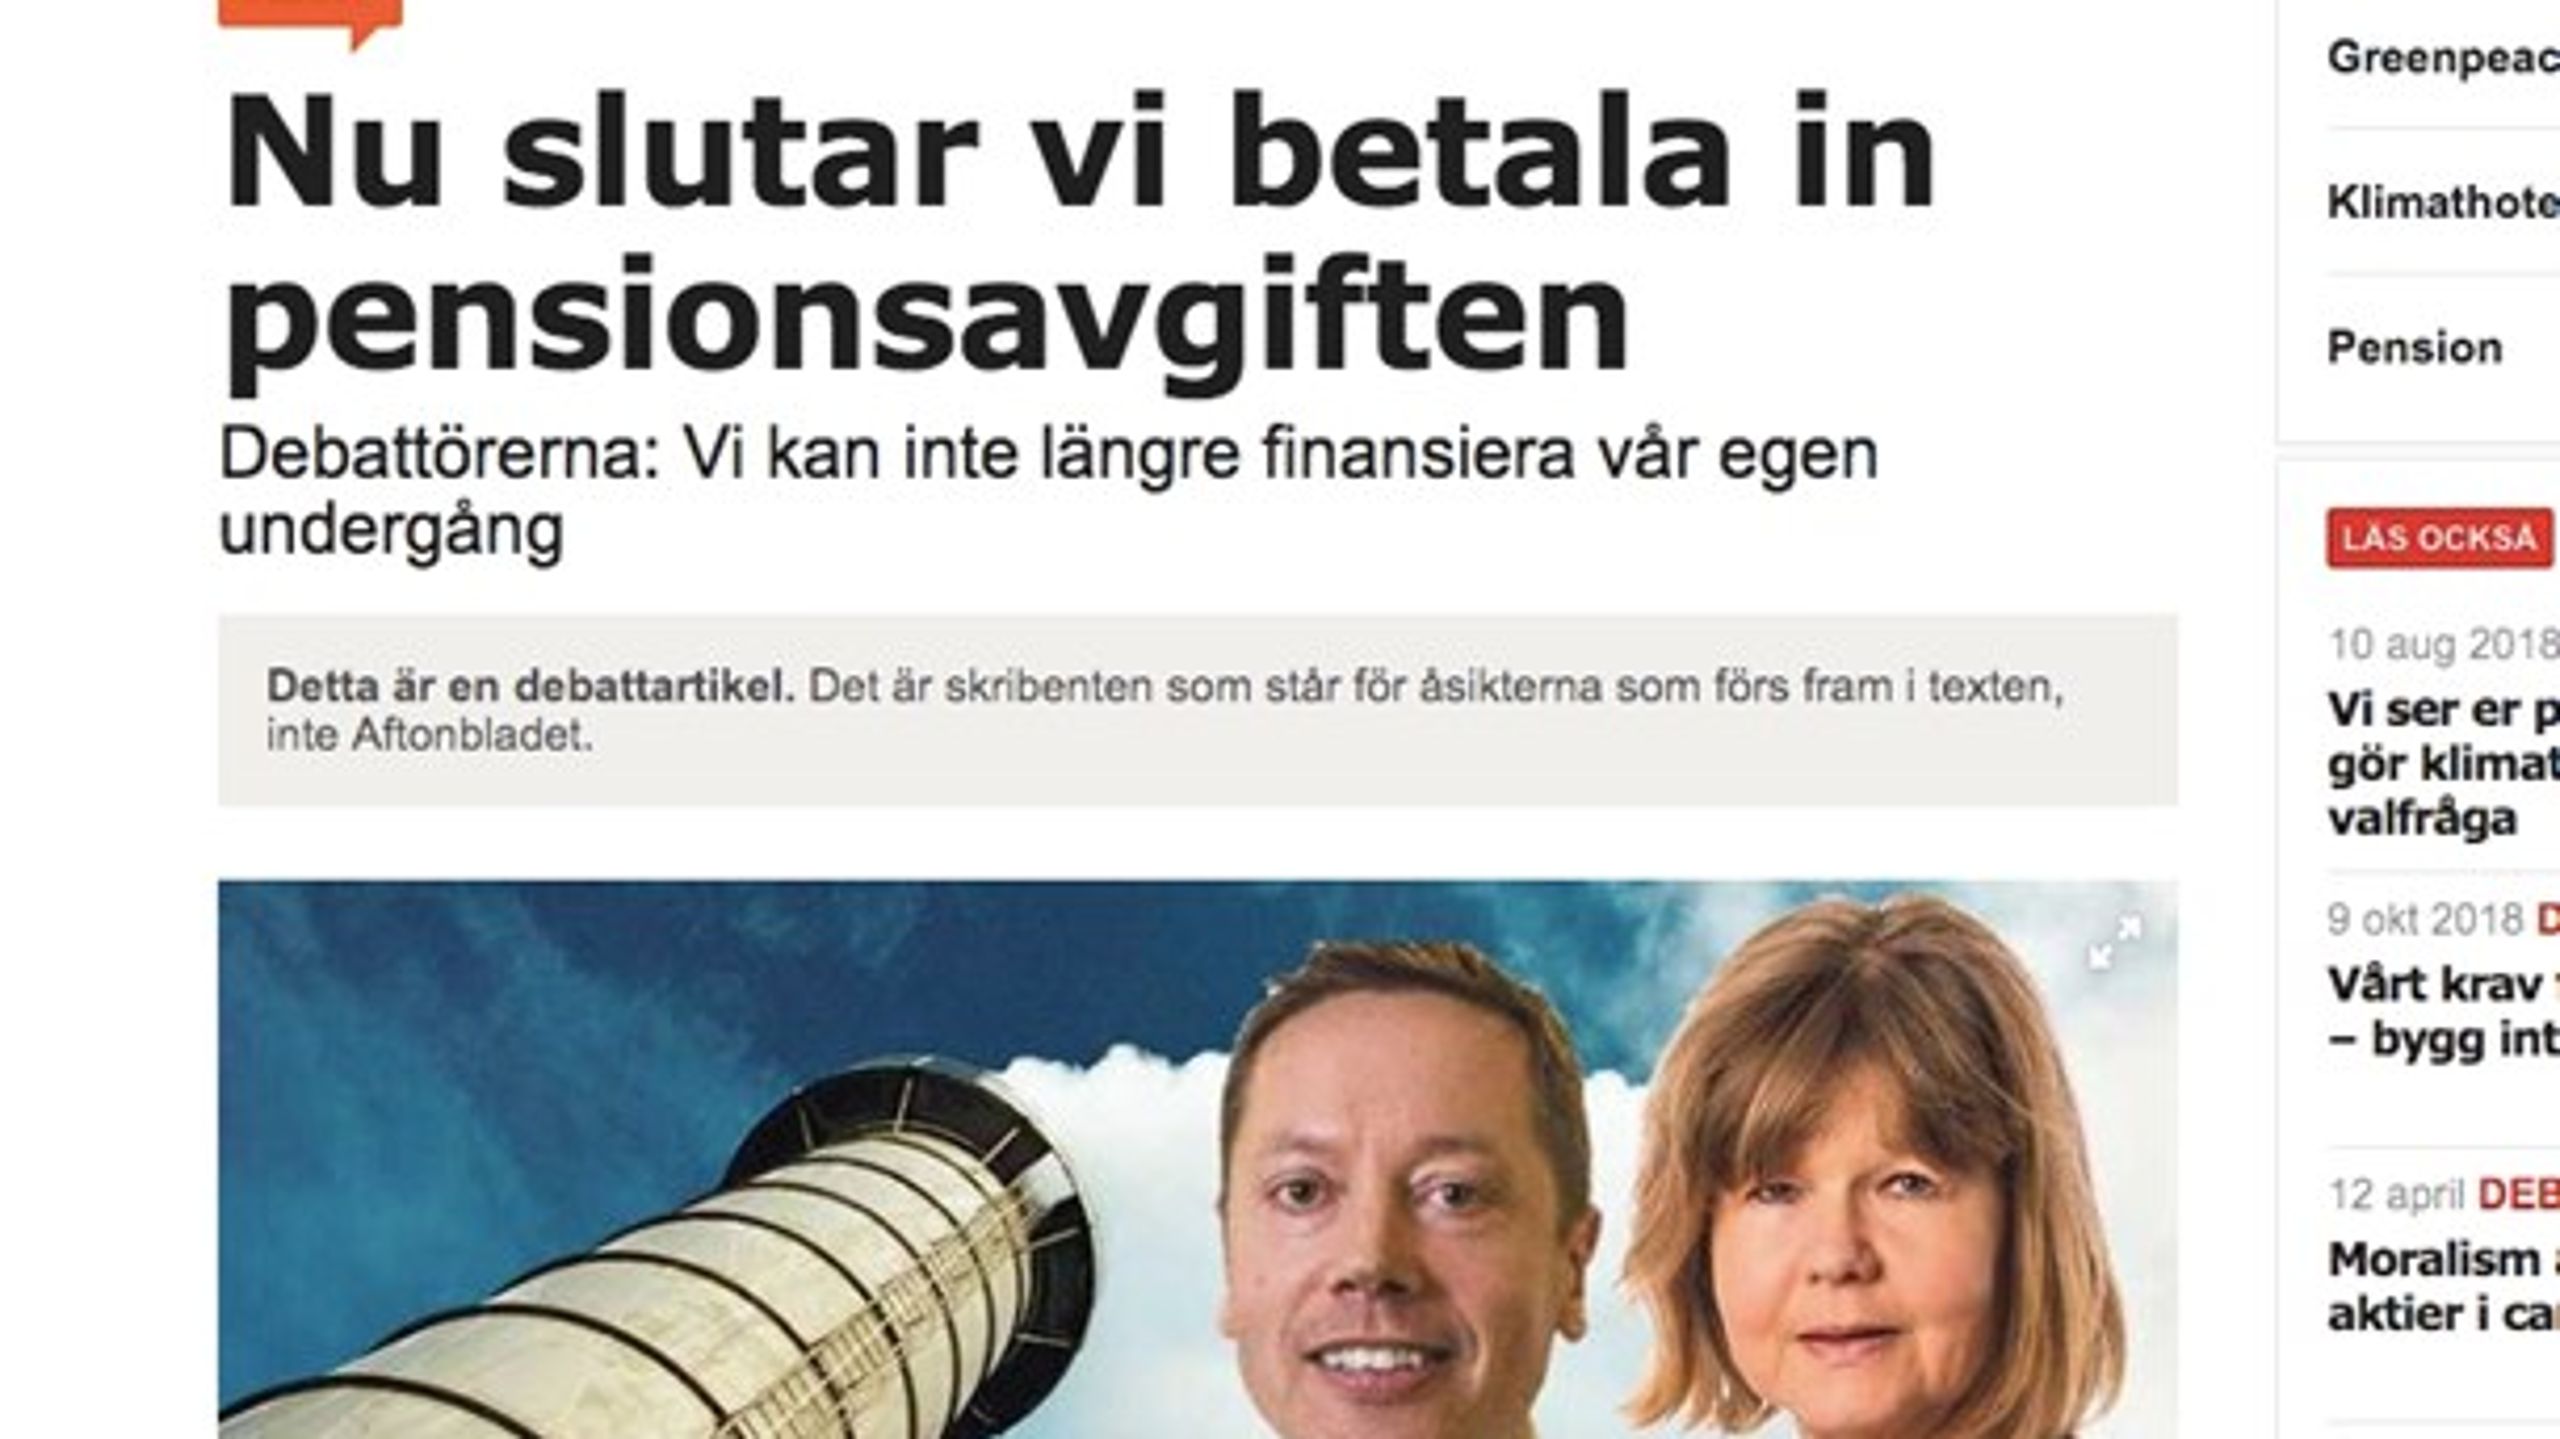 Greenpeace gick ut i en debattartikel i Aftonbladet och berättade om beslutet att upphöra med inbetalningarna av pensionsavgiften.